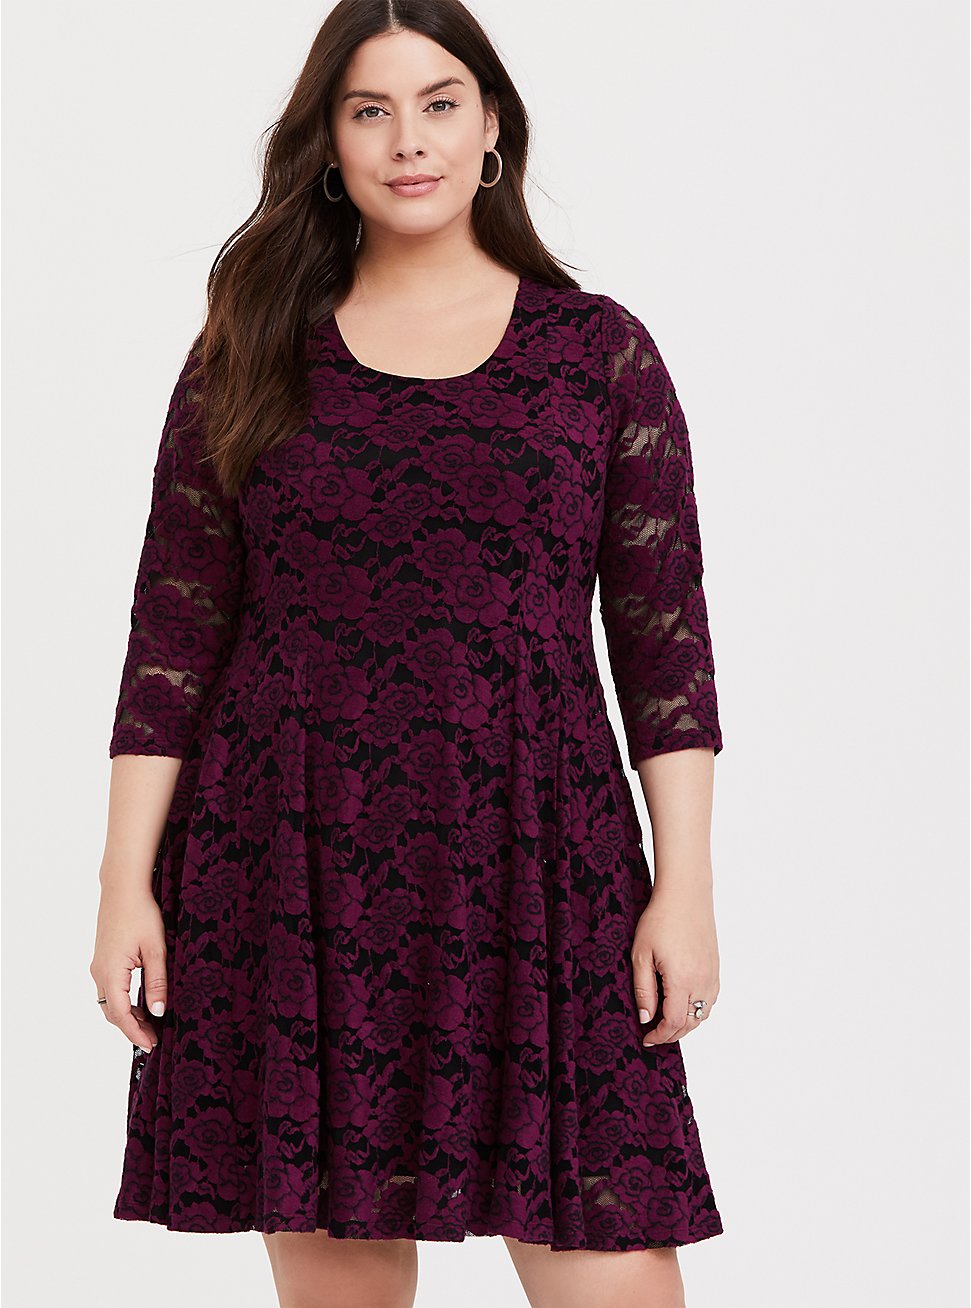 Plus Size - Burgundy Purple Lace Fluted Dress - Torrid